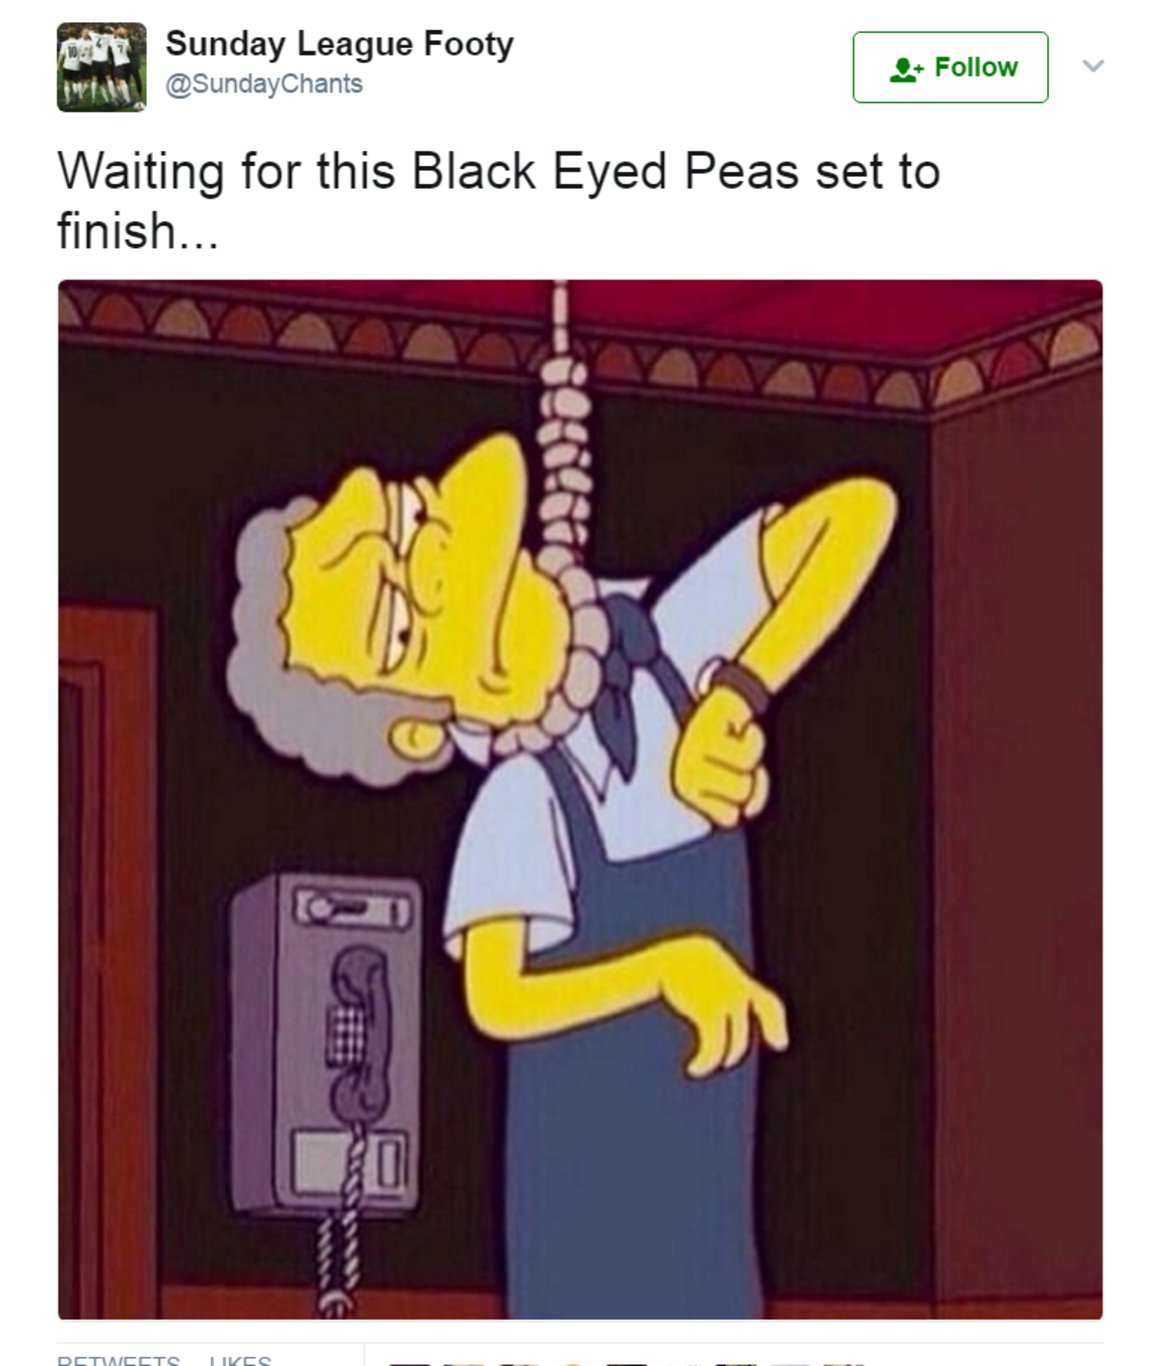 "В очакване изпълнението на Black Eyed Peas да свърши..."